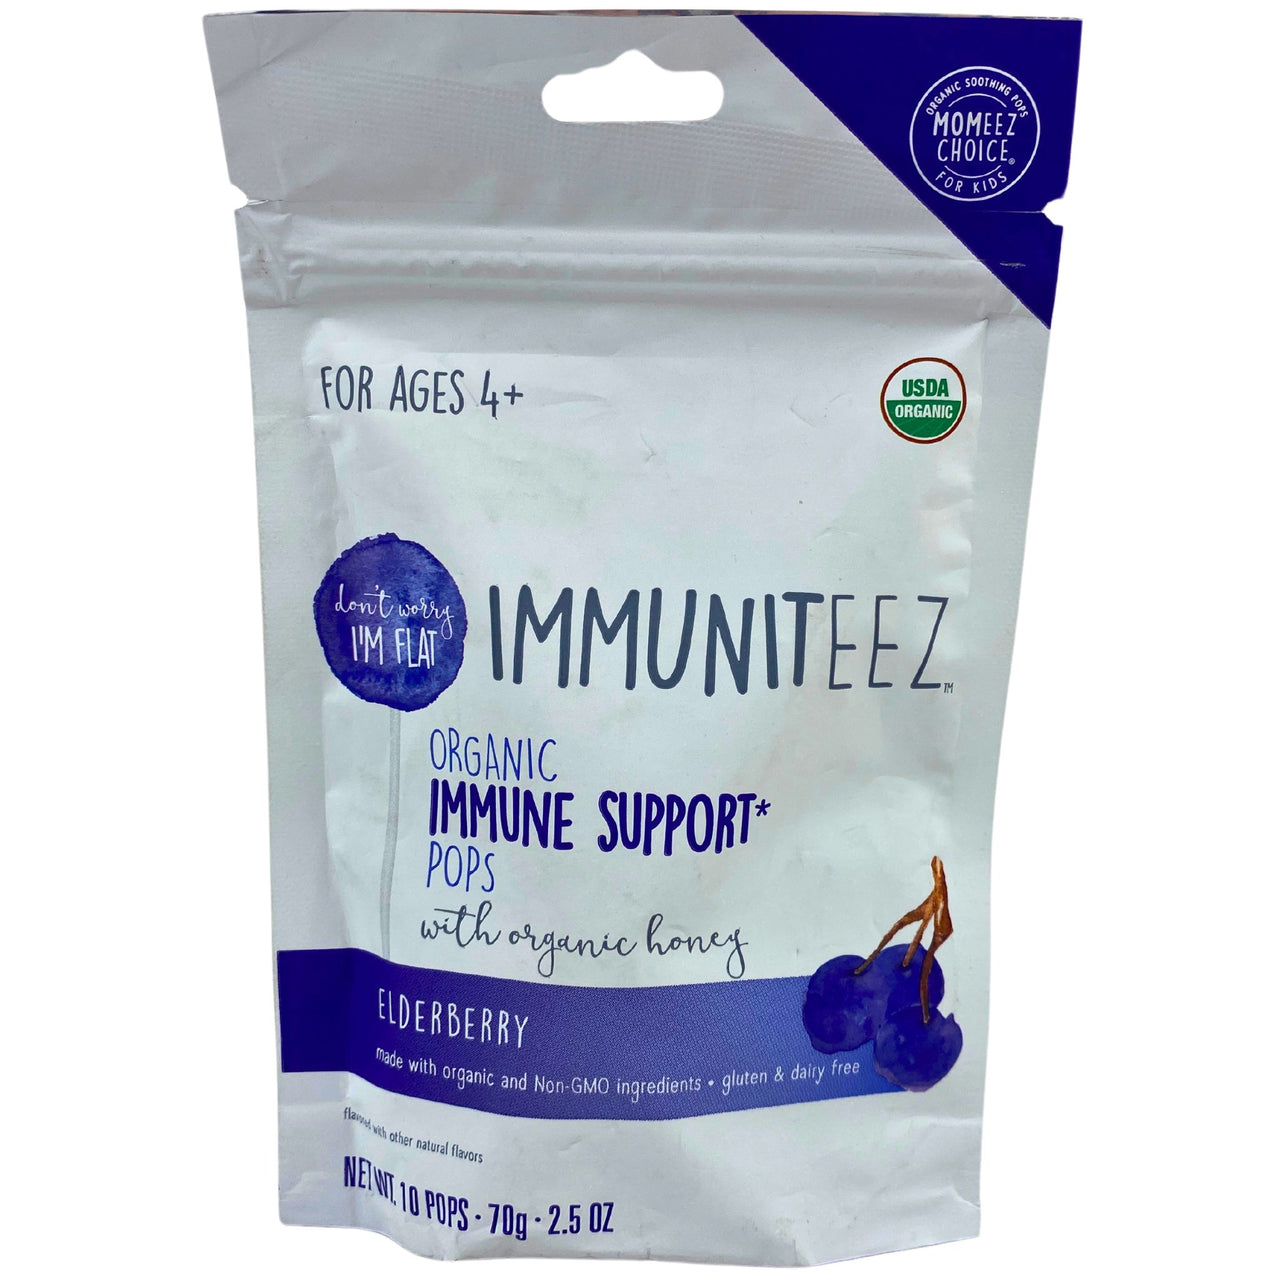 Immuniteez Organic Immune Support